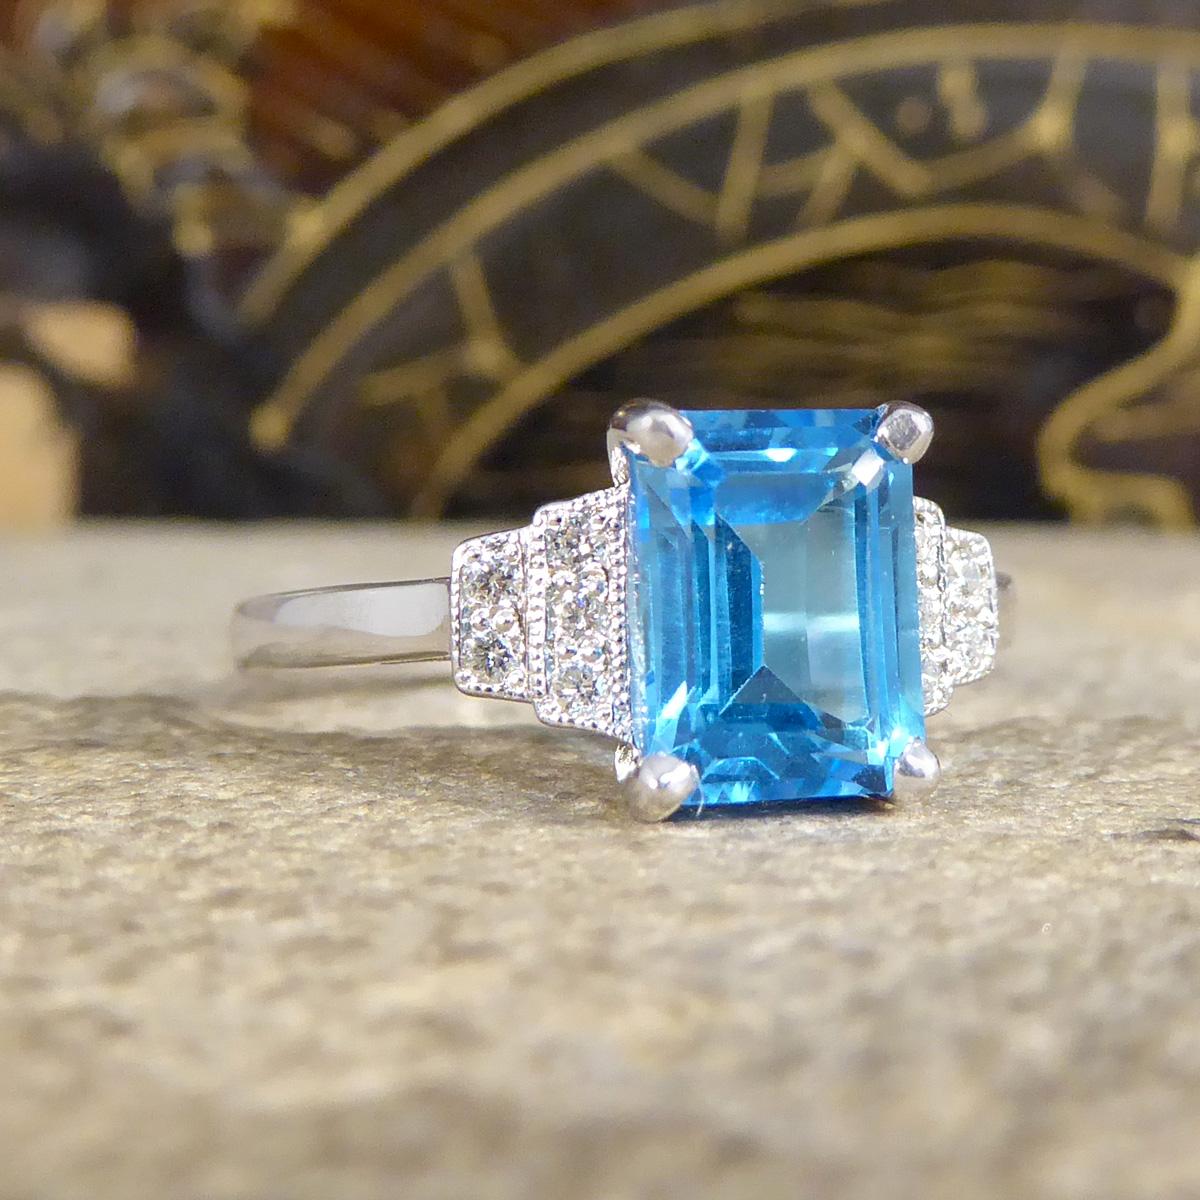 Ein schöner Ring wurde in Handarbeit im Art Deco Stil gefertigt, ist aber neu und ungetragen. Es wurde entworfen und sorgfältig mit einem lebendigen und hellen blauen Topas in der Mitte in einer vier-Krallen-Fassung mit drei milgrain gesetzt